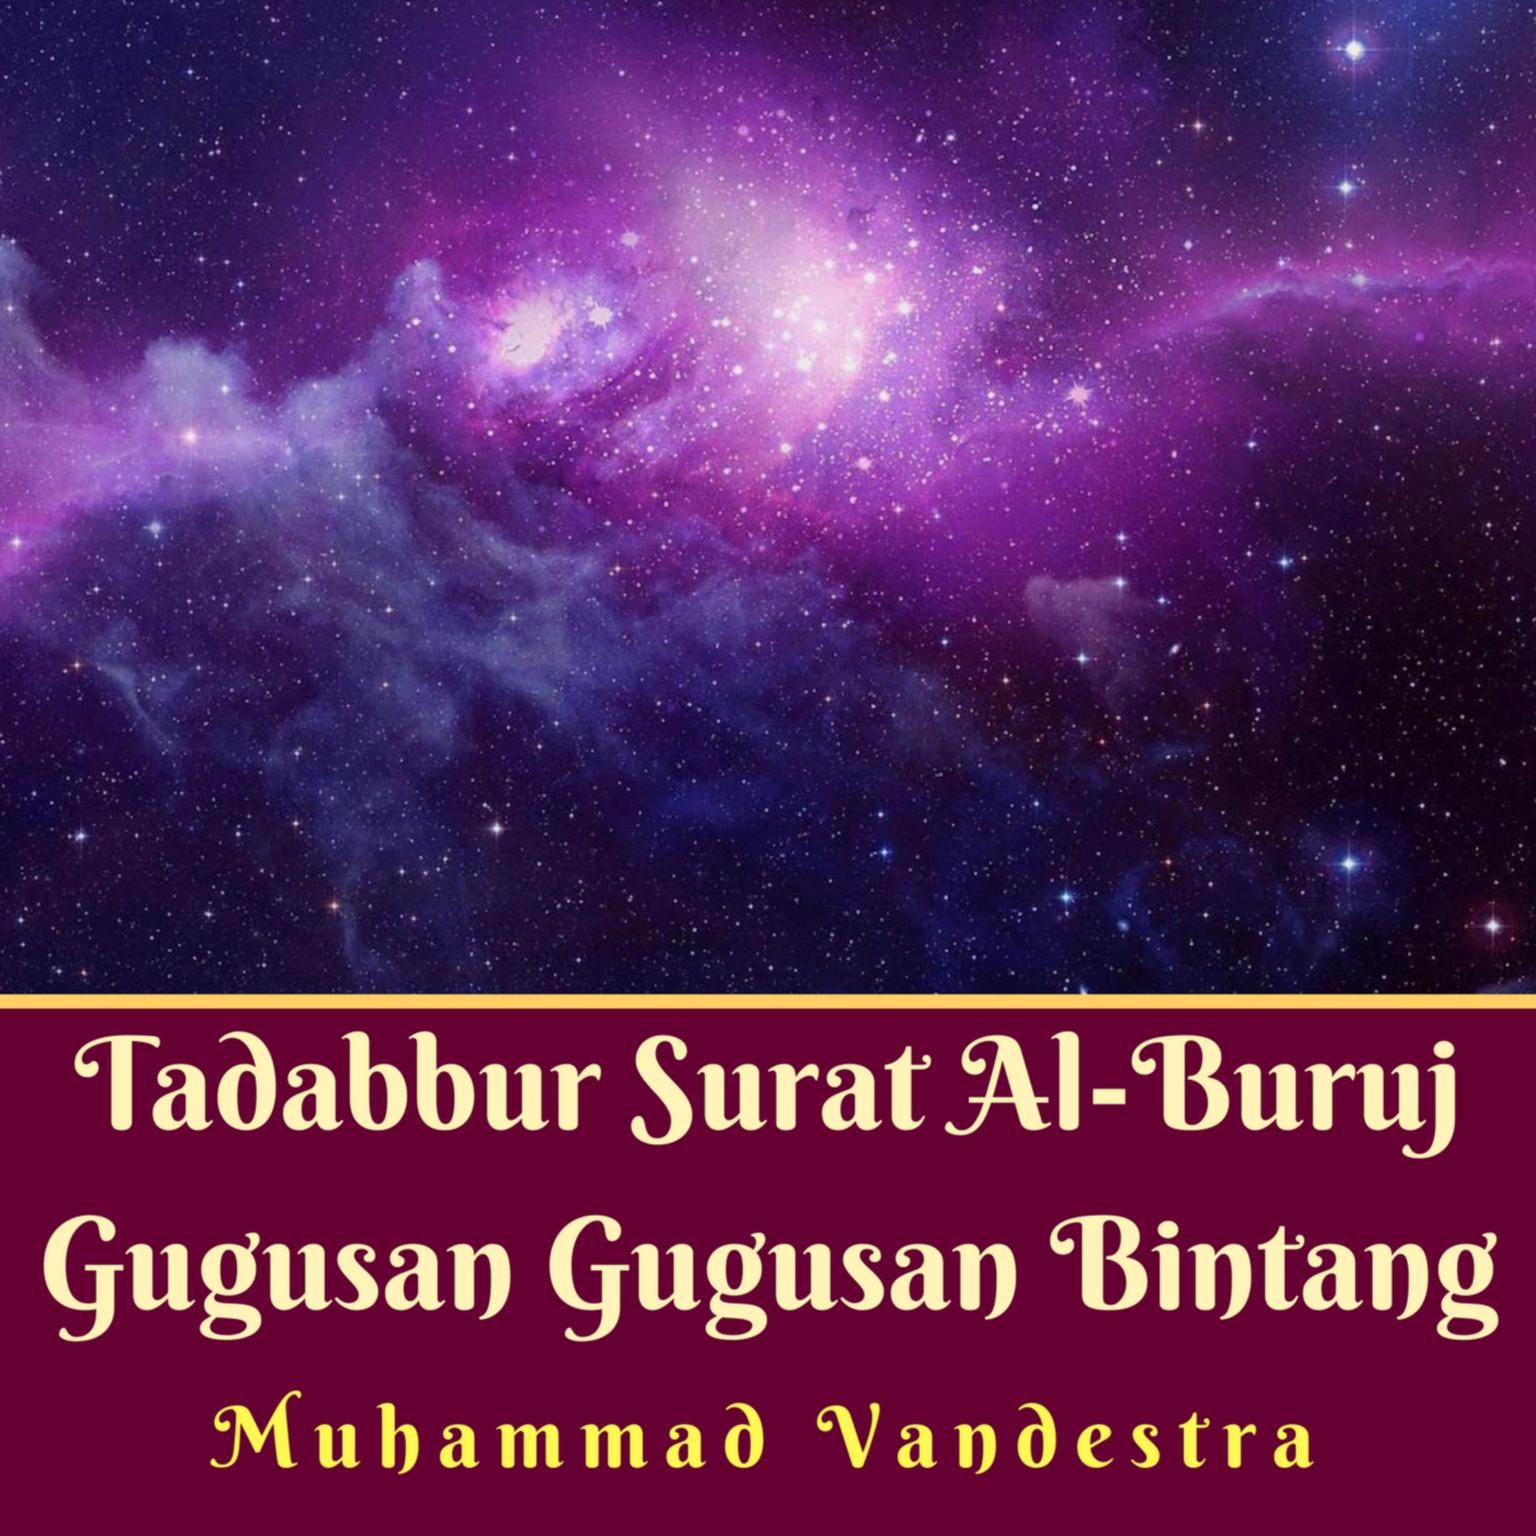 Tadabbur Surat Al-Buruj Gugusan Gugusan Bintang Audiobook, by Muhammad Vandestra